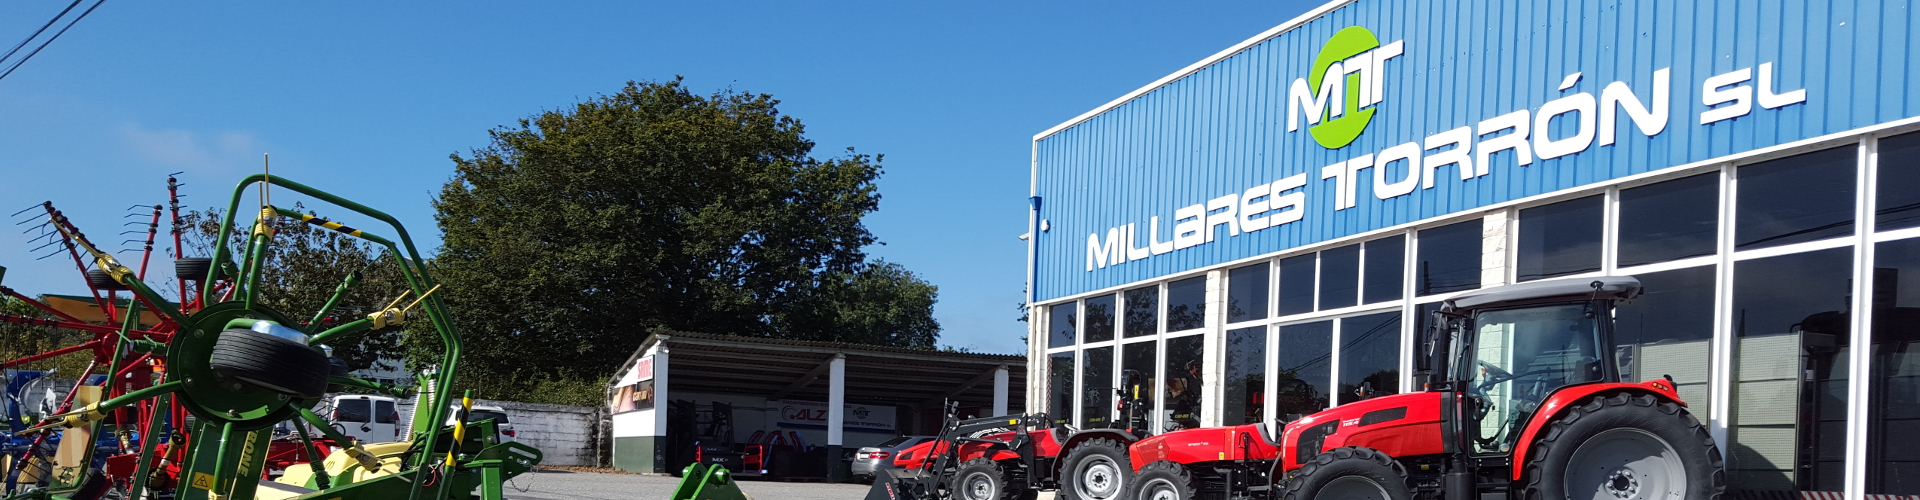 cabecera maquinaria agrícola millares torrón en Lugo Galicia